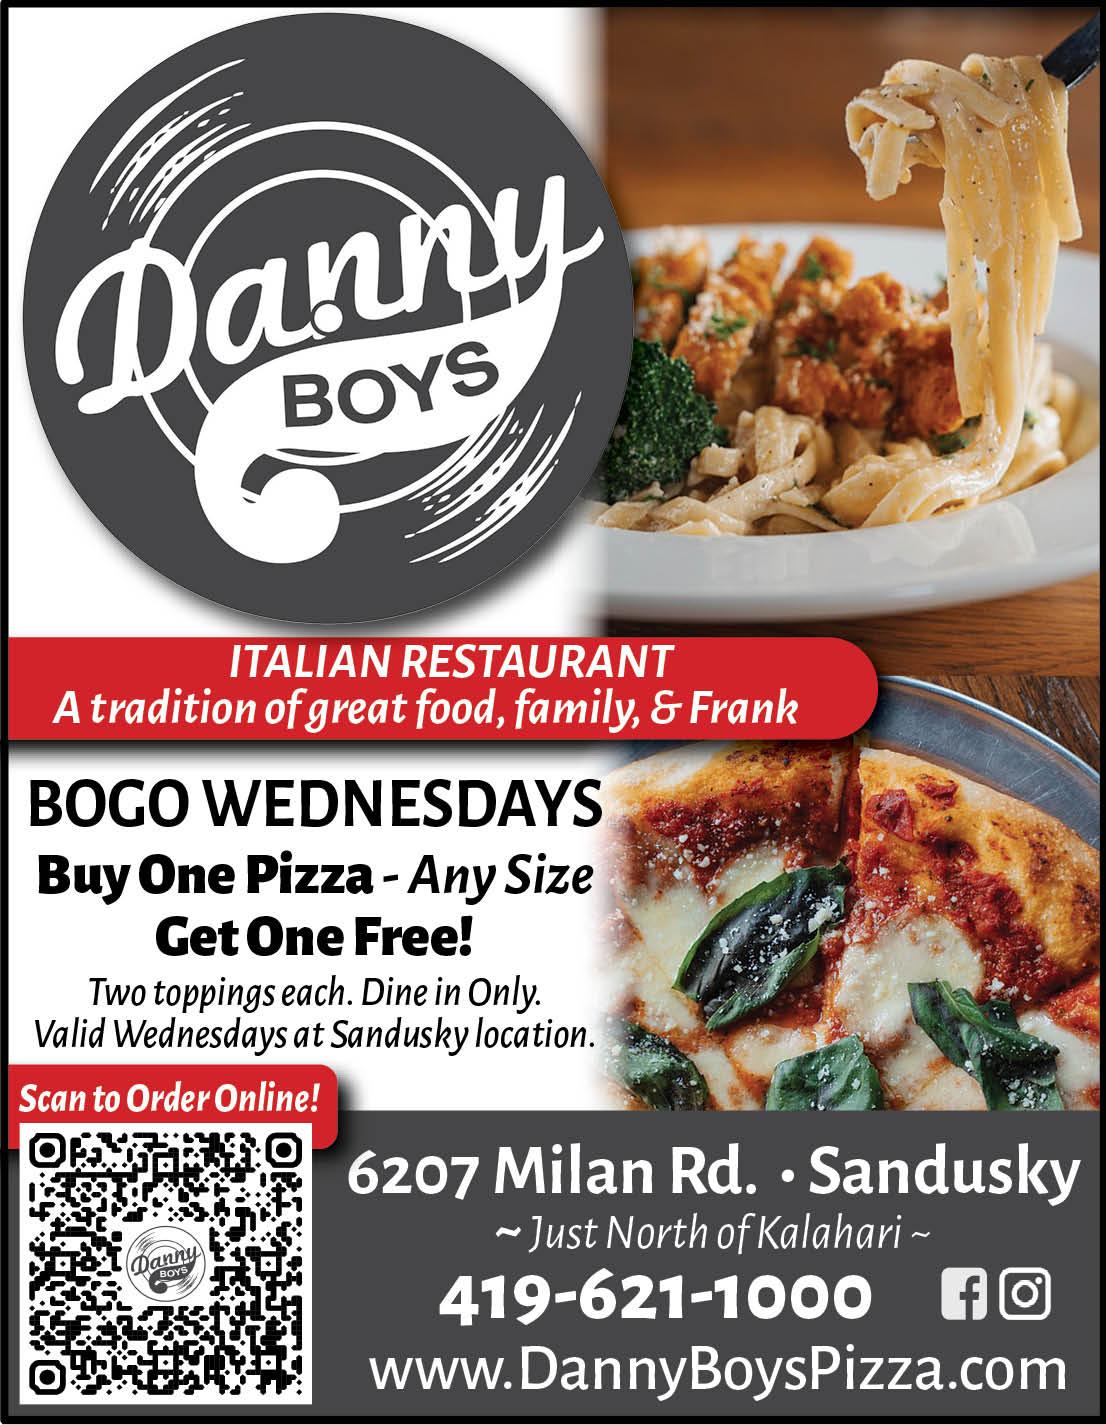 Food Online  Danny's Restaurants